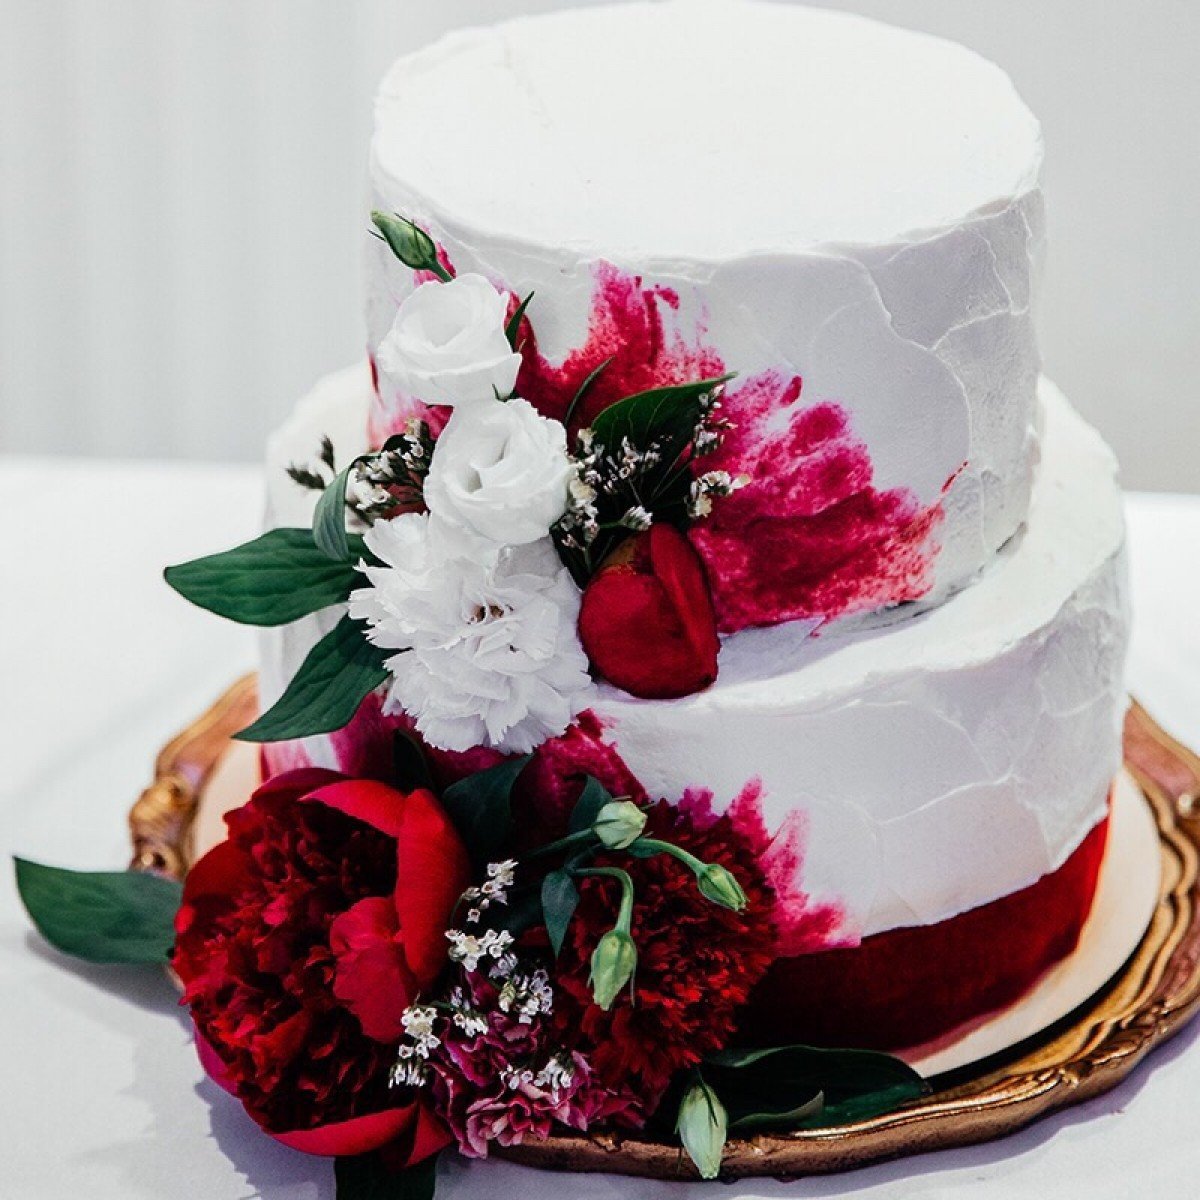 фото свадебного торта с живыми цветами